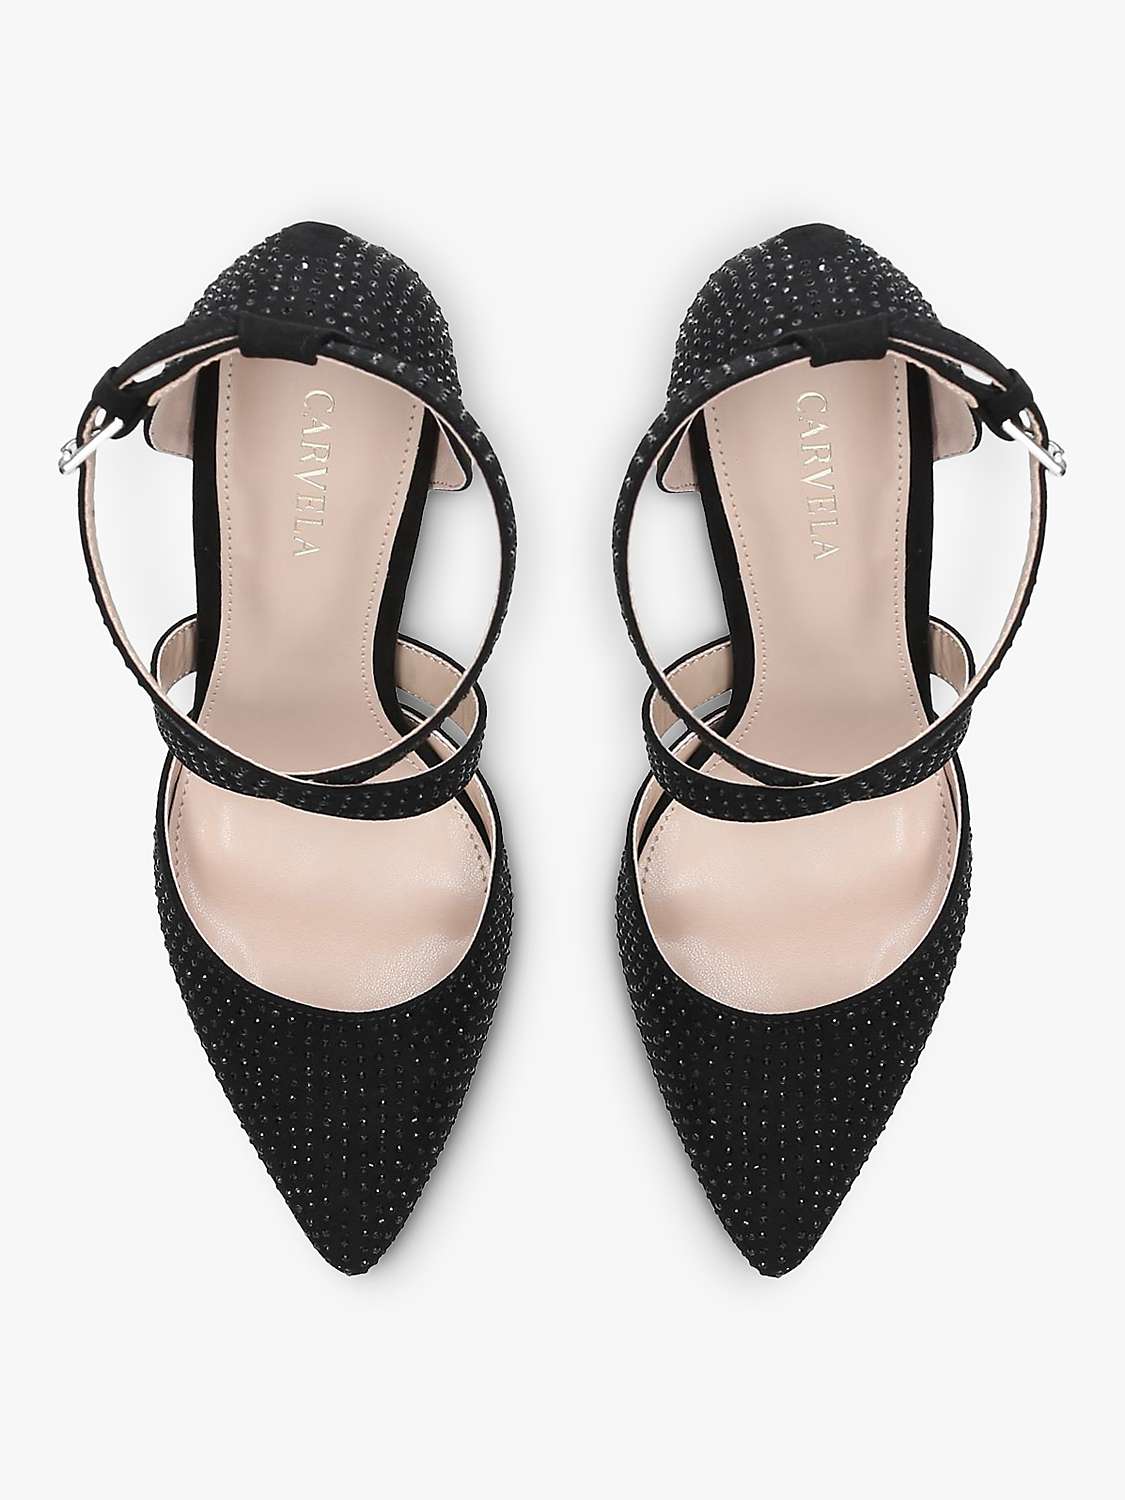 Buy Carvela Kross Jewel Suede Court Shoes, Black Online at johnlewis.com